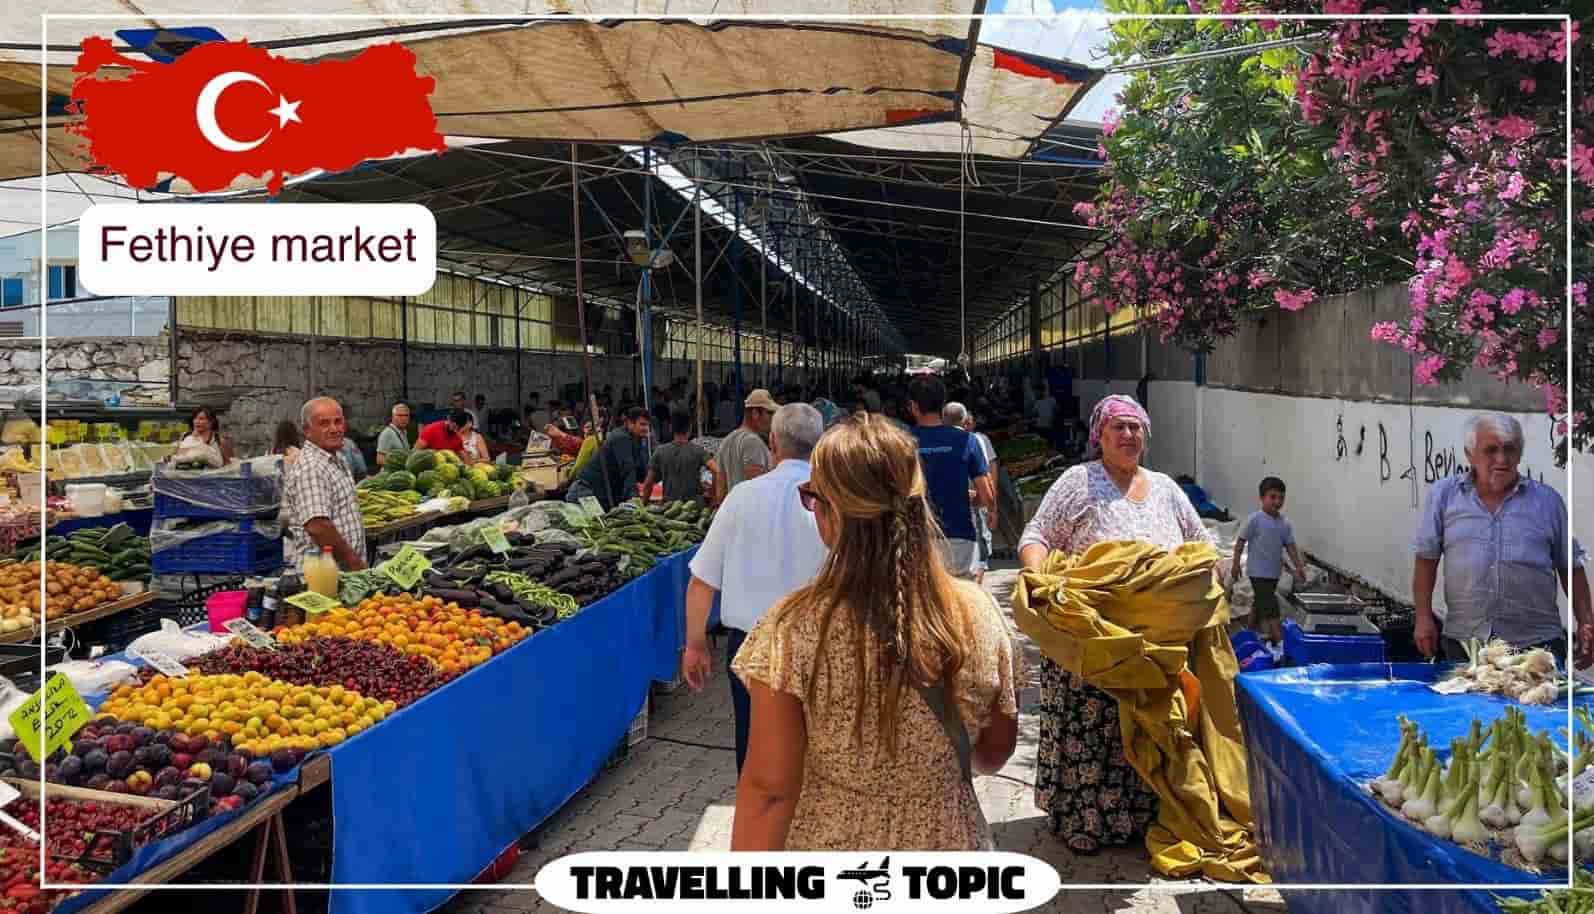 Fethiye market